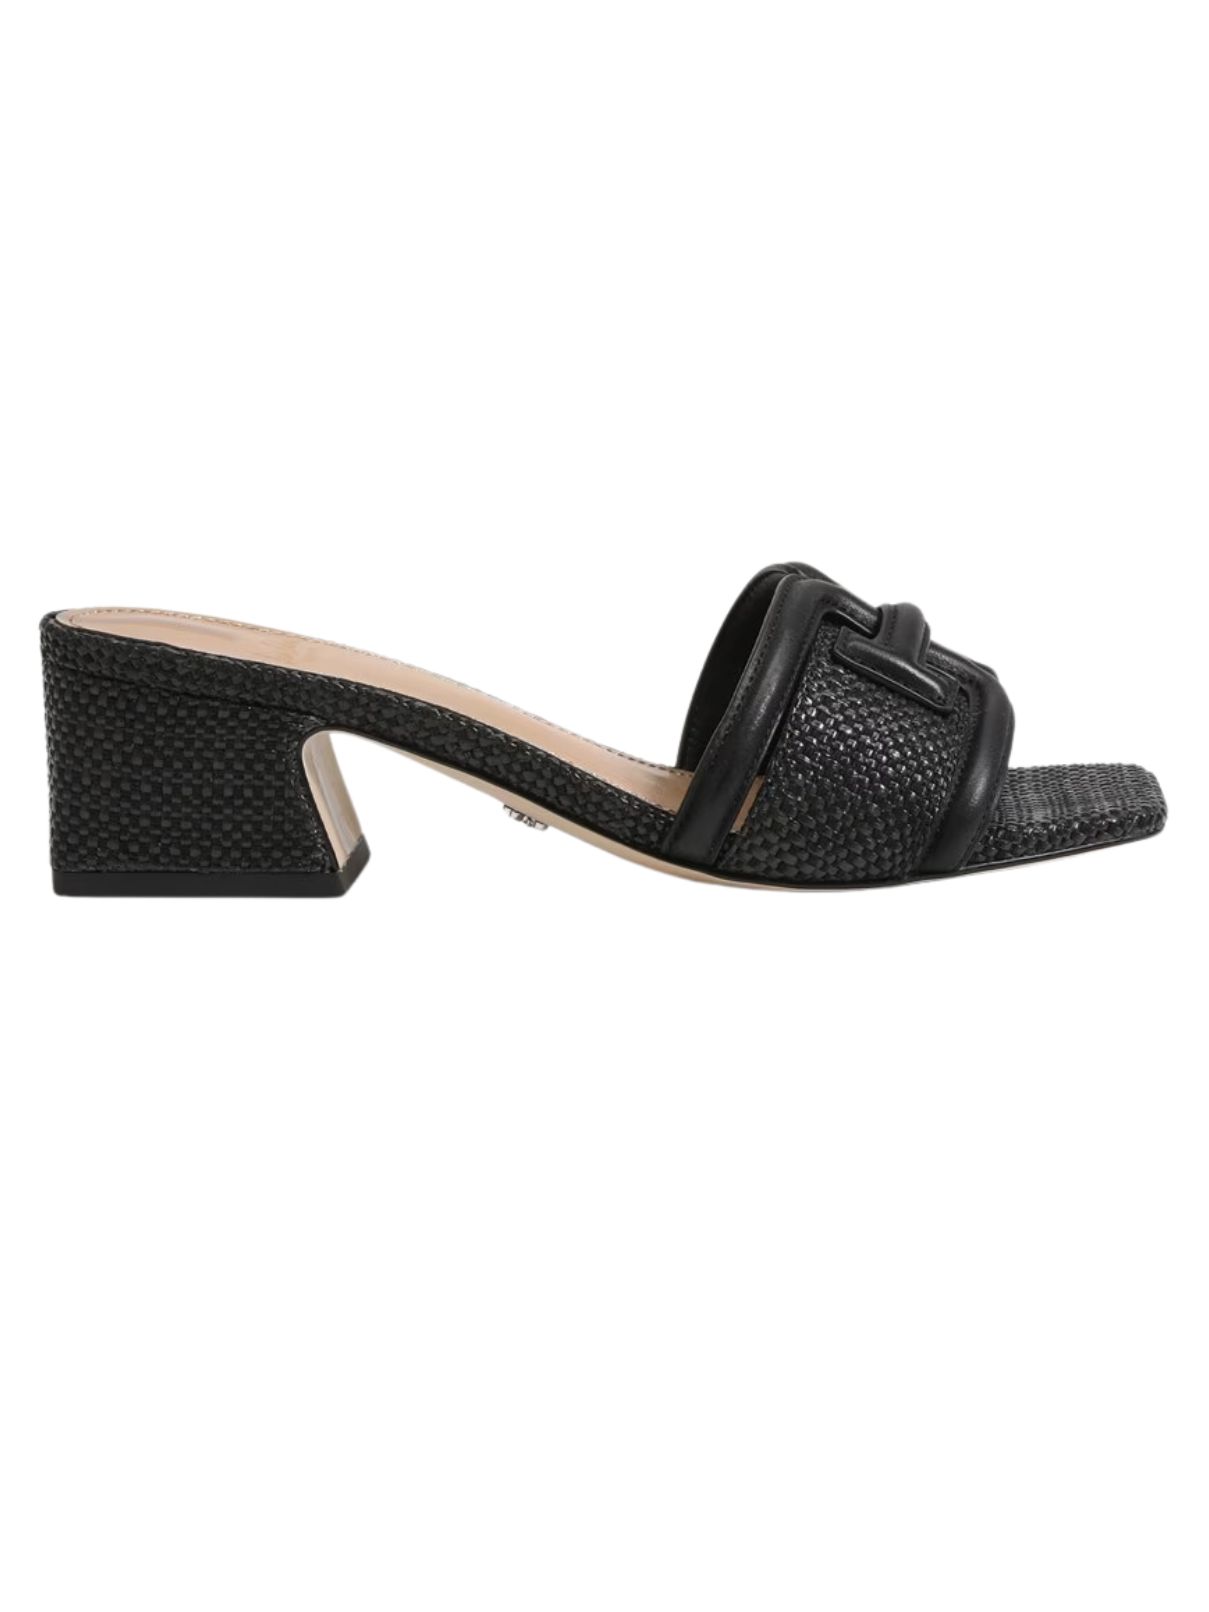 sam edelman waylon heel in black weave